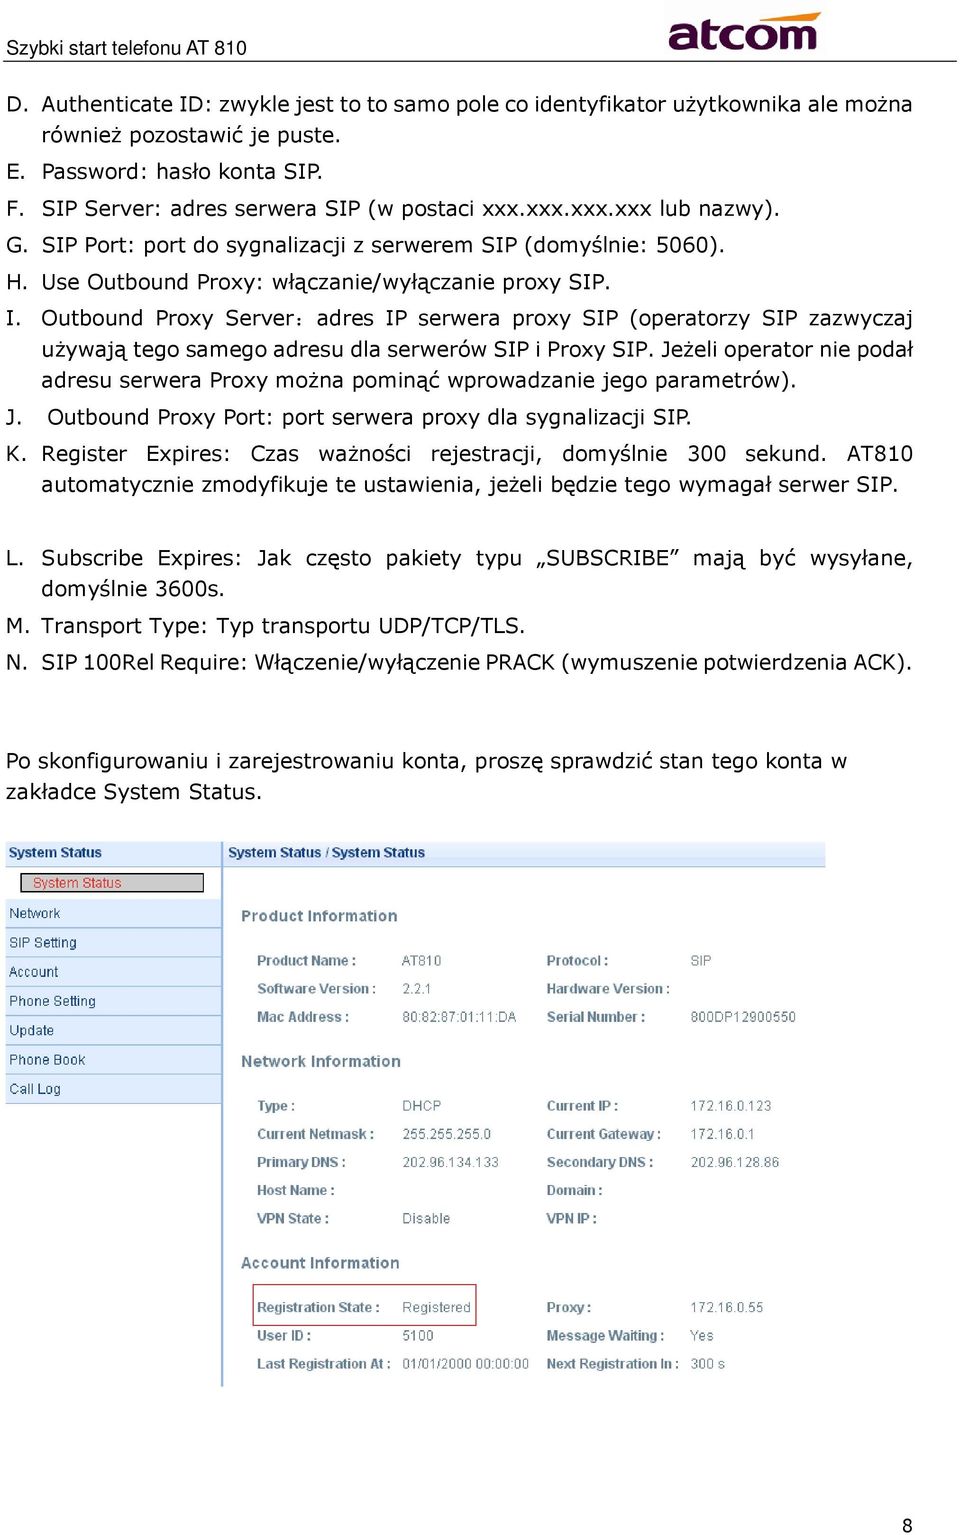 Outbound Proxy Server:adres IP serwera proxy SIP (operatorzy SIP zazwyczaj używają tego samego adresu dla serwerów SIP i Proxy SIP.